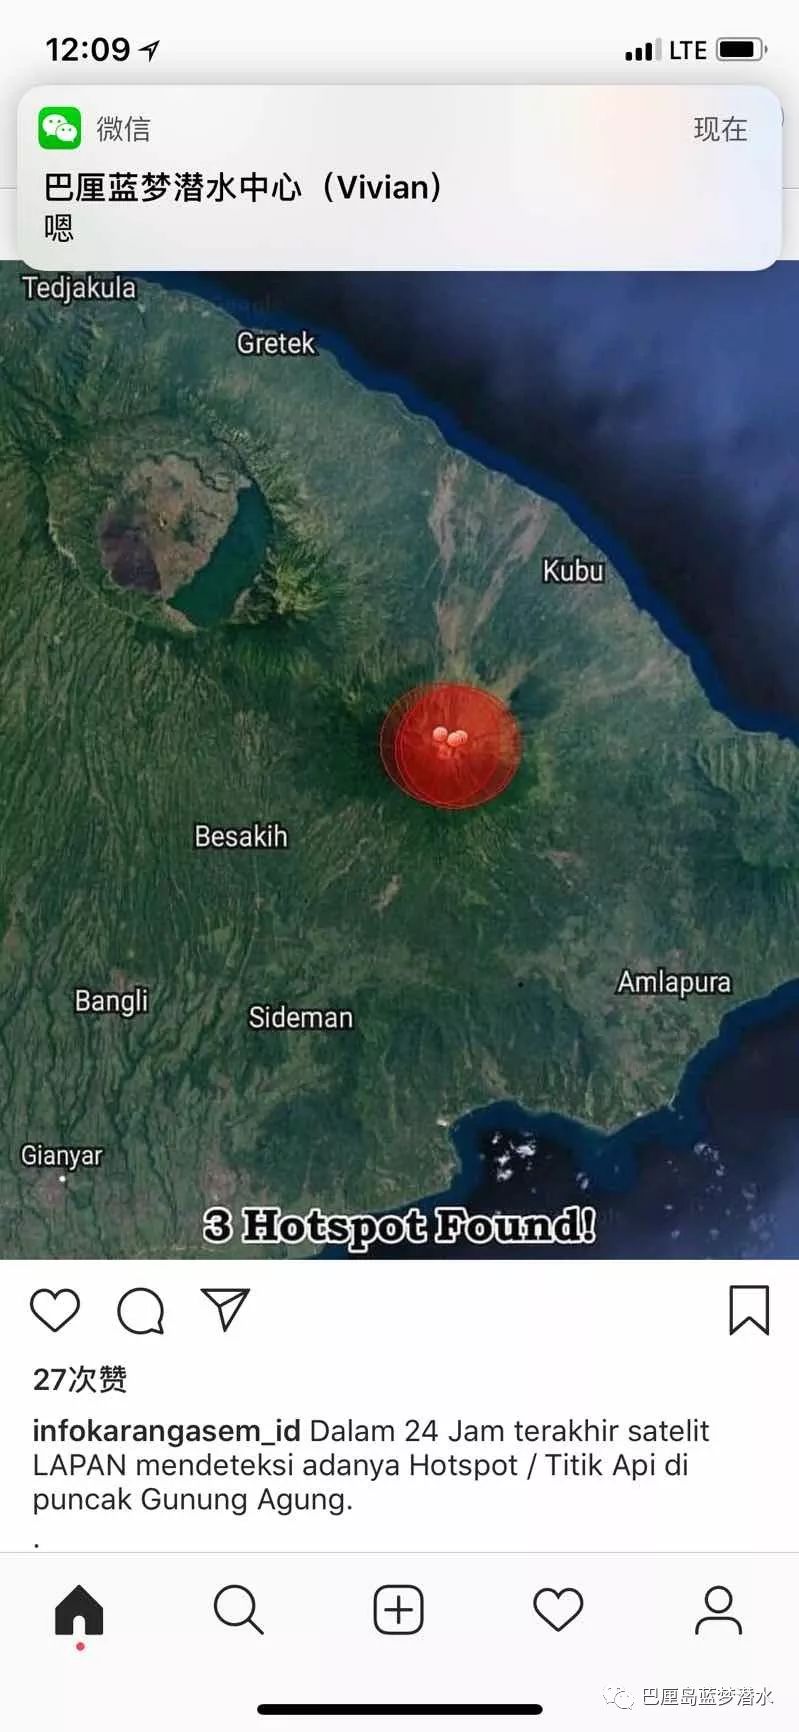 受火山喷发火山灰影响,巴厘岛伍拉莱国际机场于6月29日凌晨3点至晚上7图片